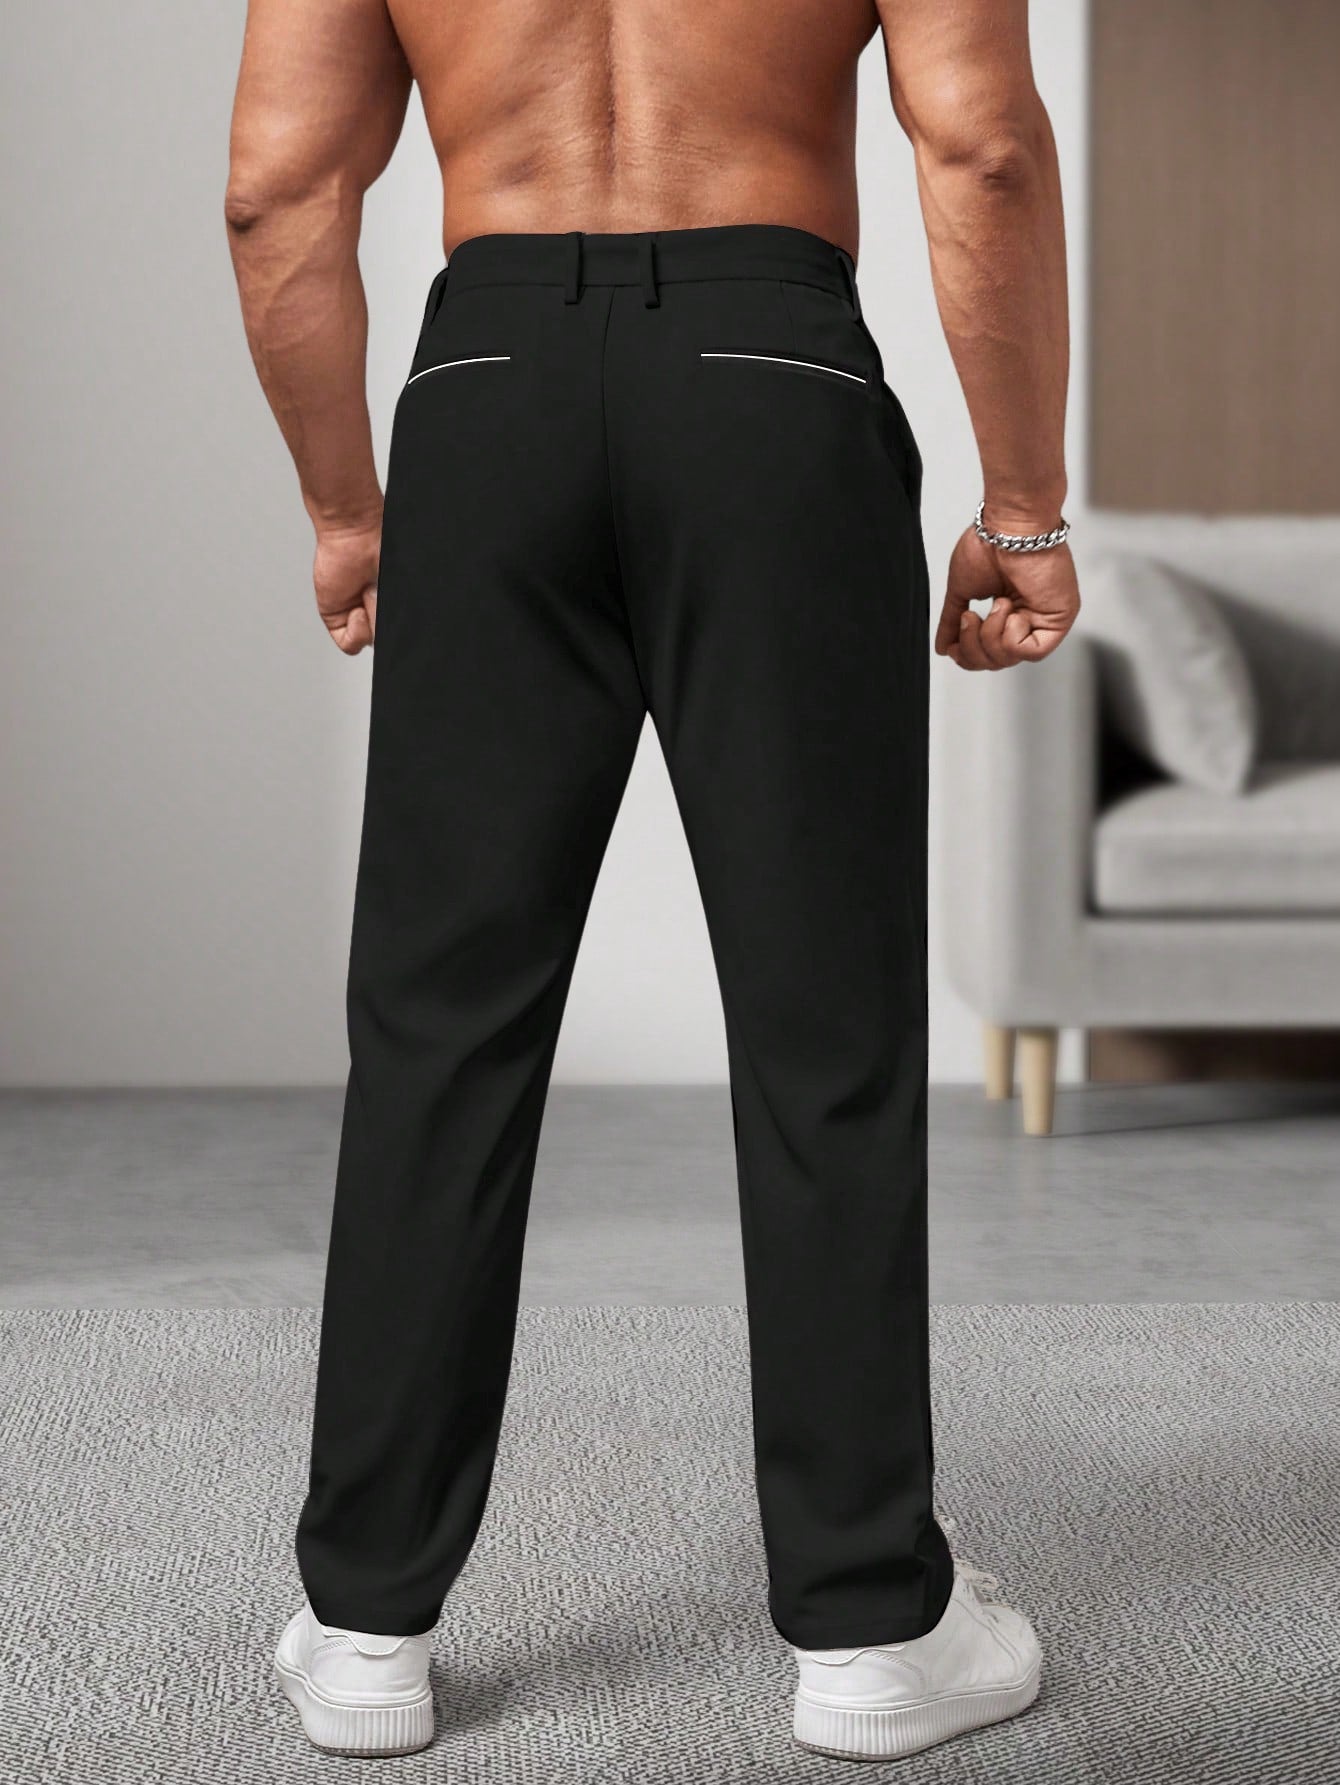 Men's Business Solid Color Suit Pants